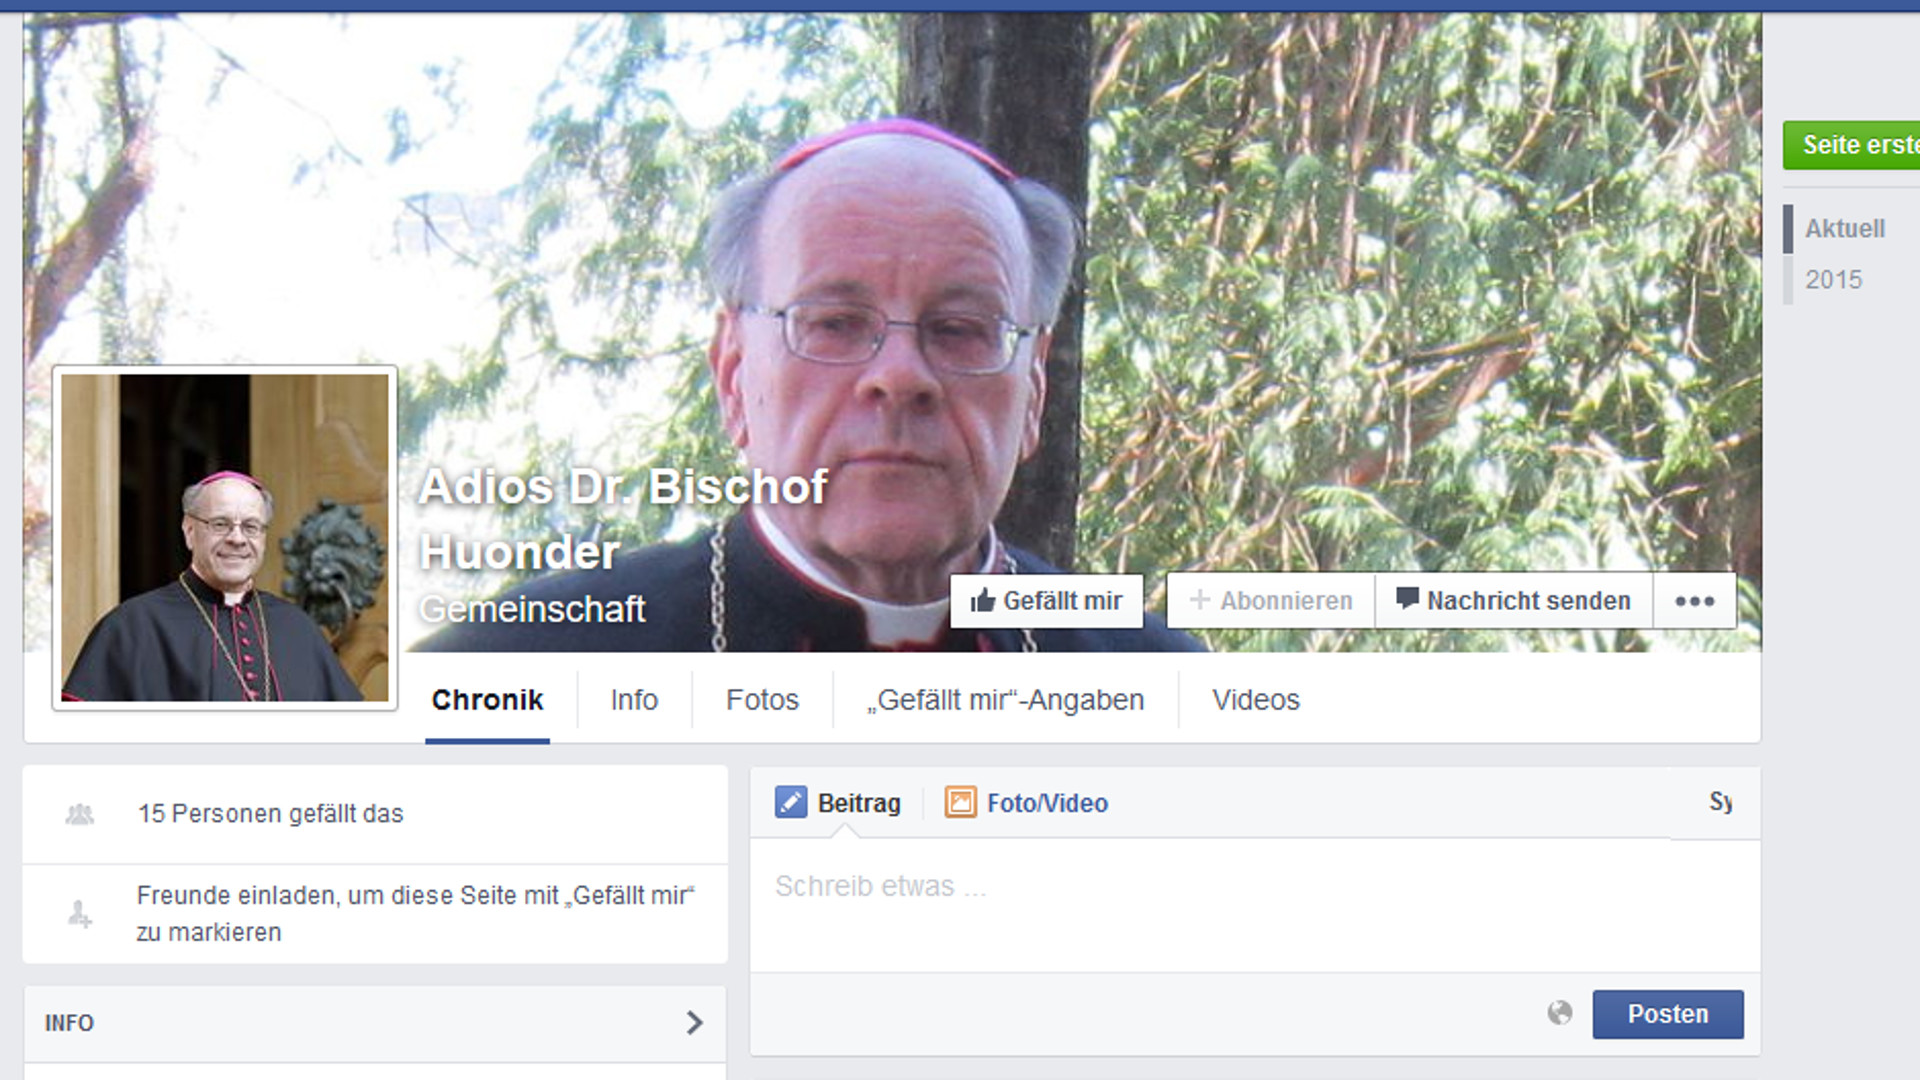 Facebook-Seite "Adios Dr. Bischof Huonder"